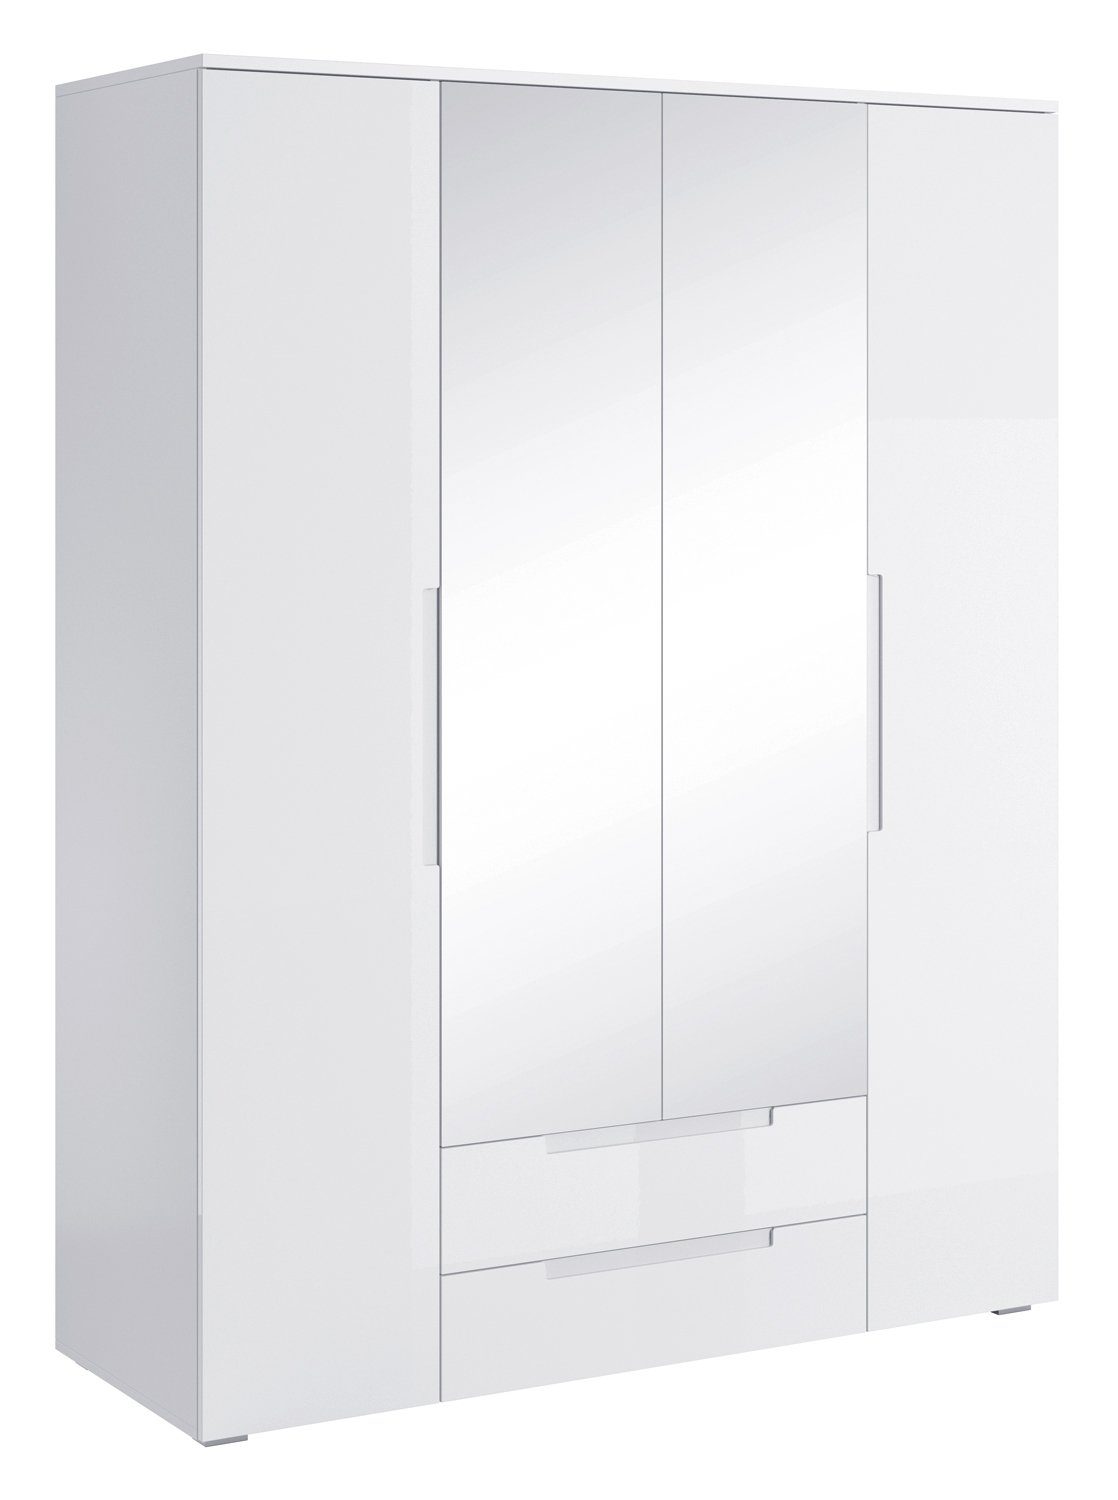 H cm, Türen, 160 Spiegel x 208 Hochglanz, B cm Kleiderschrank SPICE, Drehtürenschrank Pol-Power Weiß 2 4 Schubladen, mit